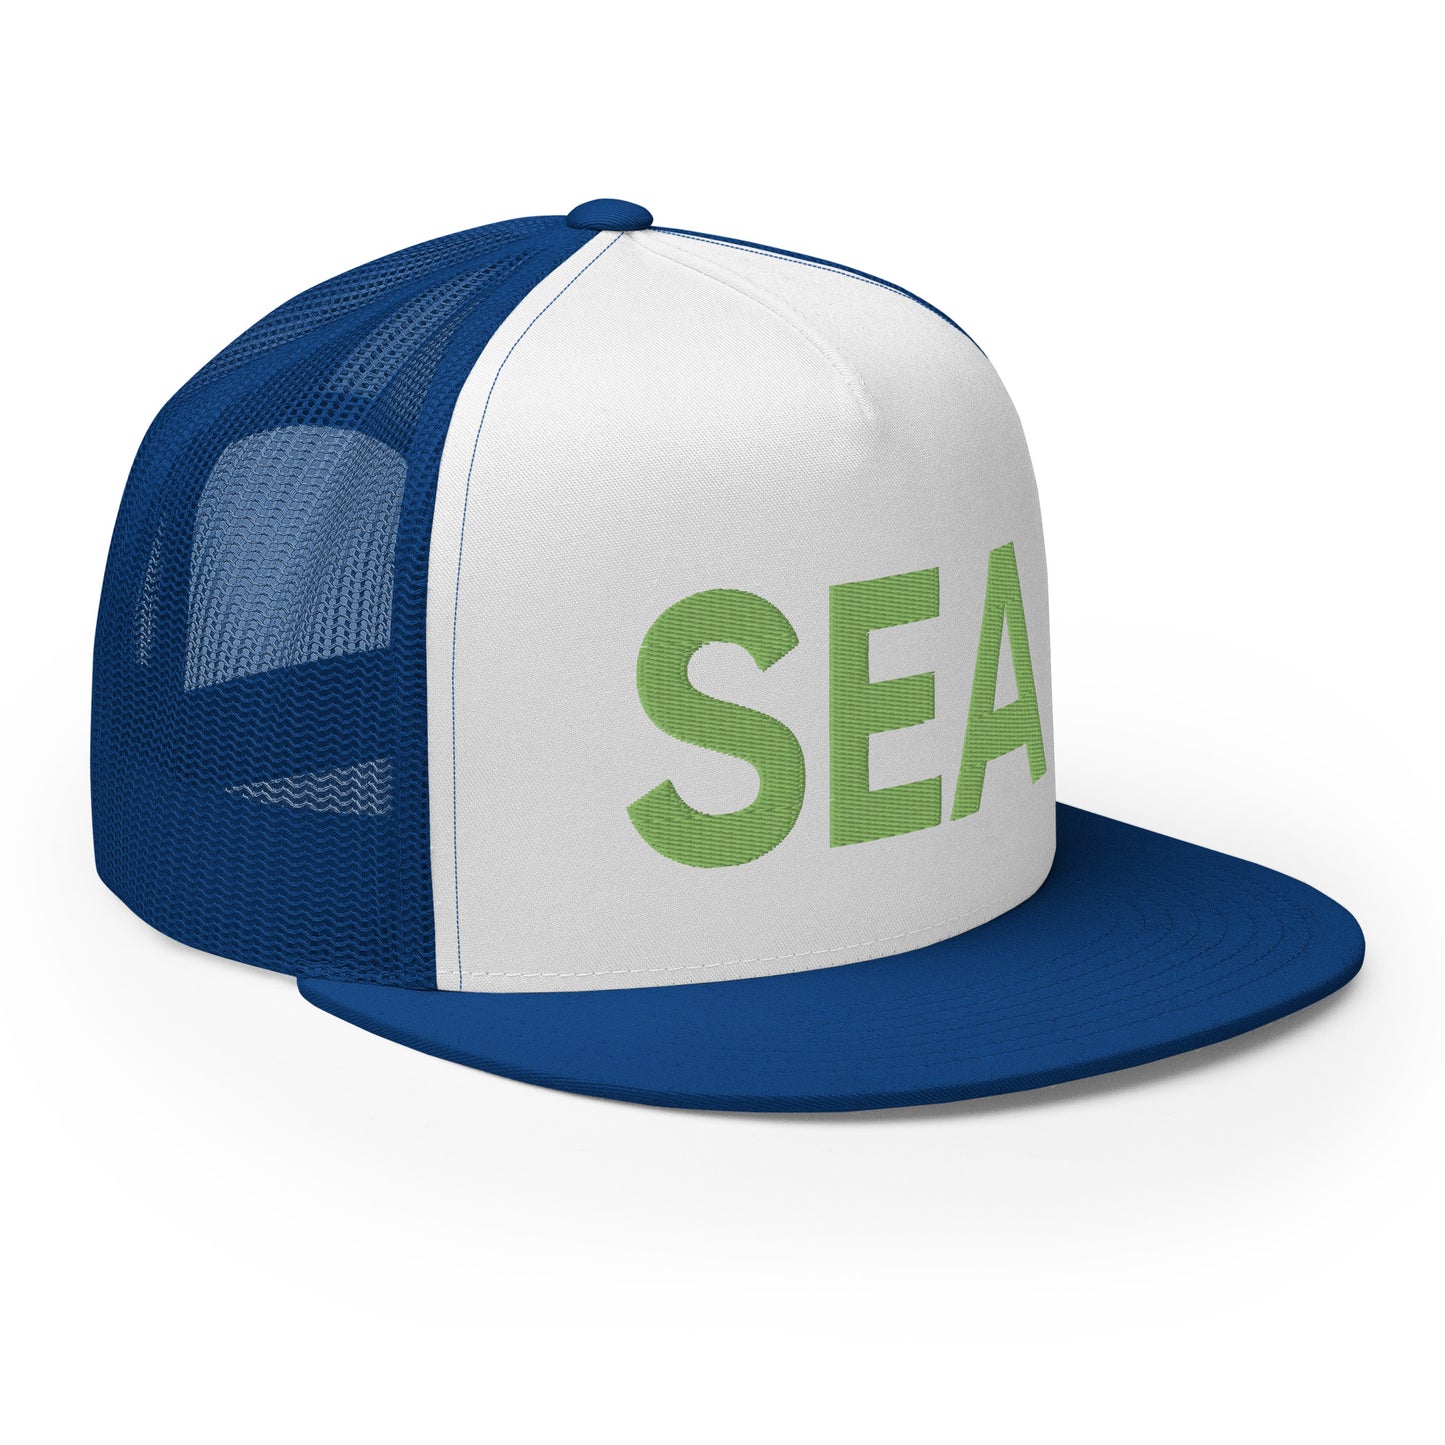 SEA Seattle Strong Trucker Hat